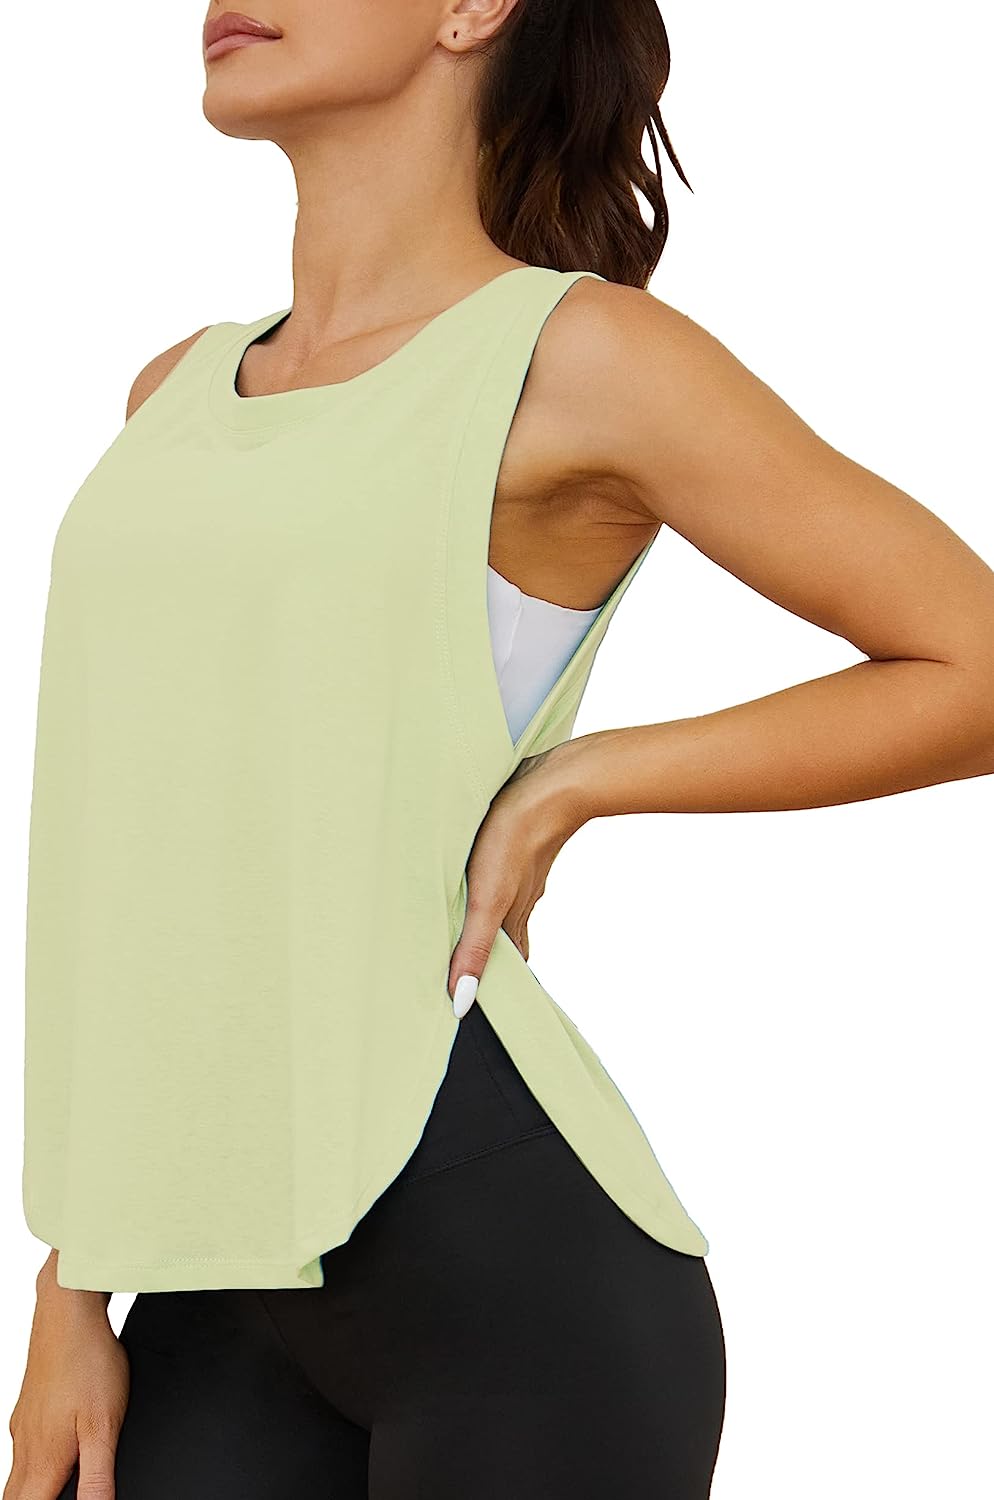 Women's Workout Tanks & Sleeveless T-Shirts